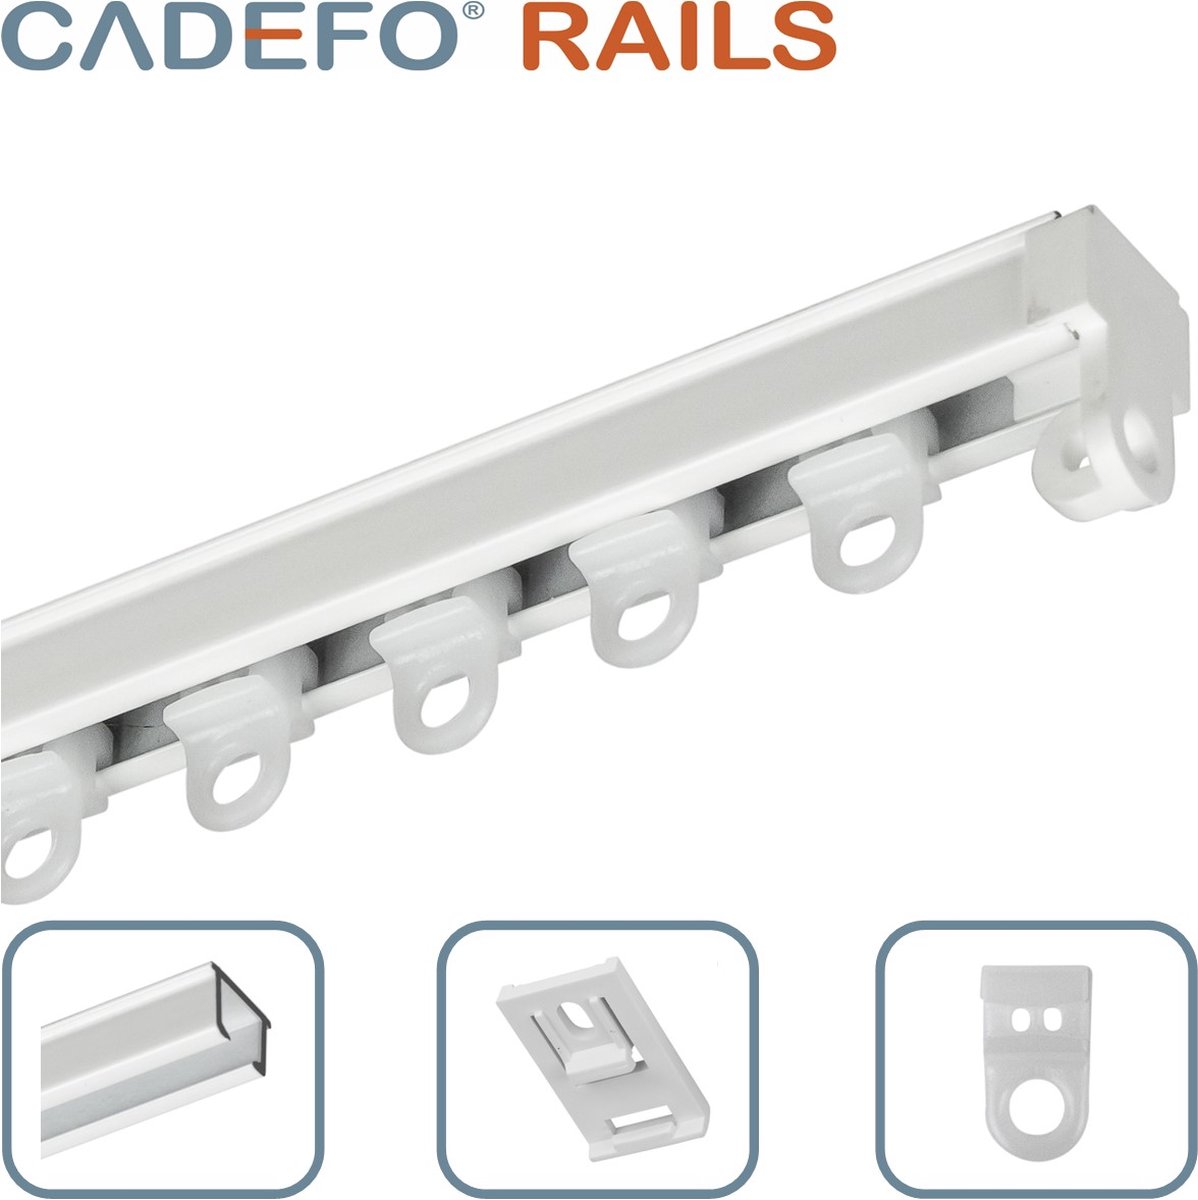 CADEFO RAILS (551 - 600 cm) Gordijnrails - Compleet op maat! - UIT 1 STUK - Leverbaar tot 6 meter - Plafondbevestiging - Lengte 561 cm